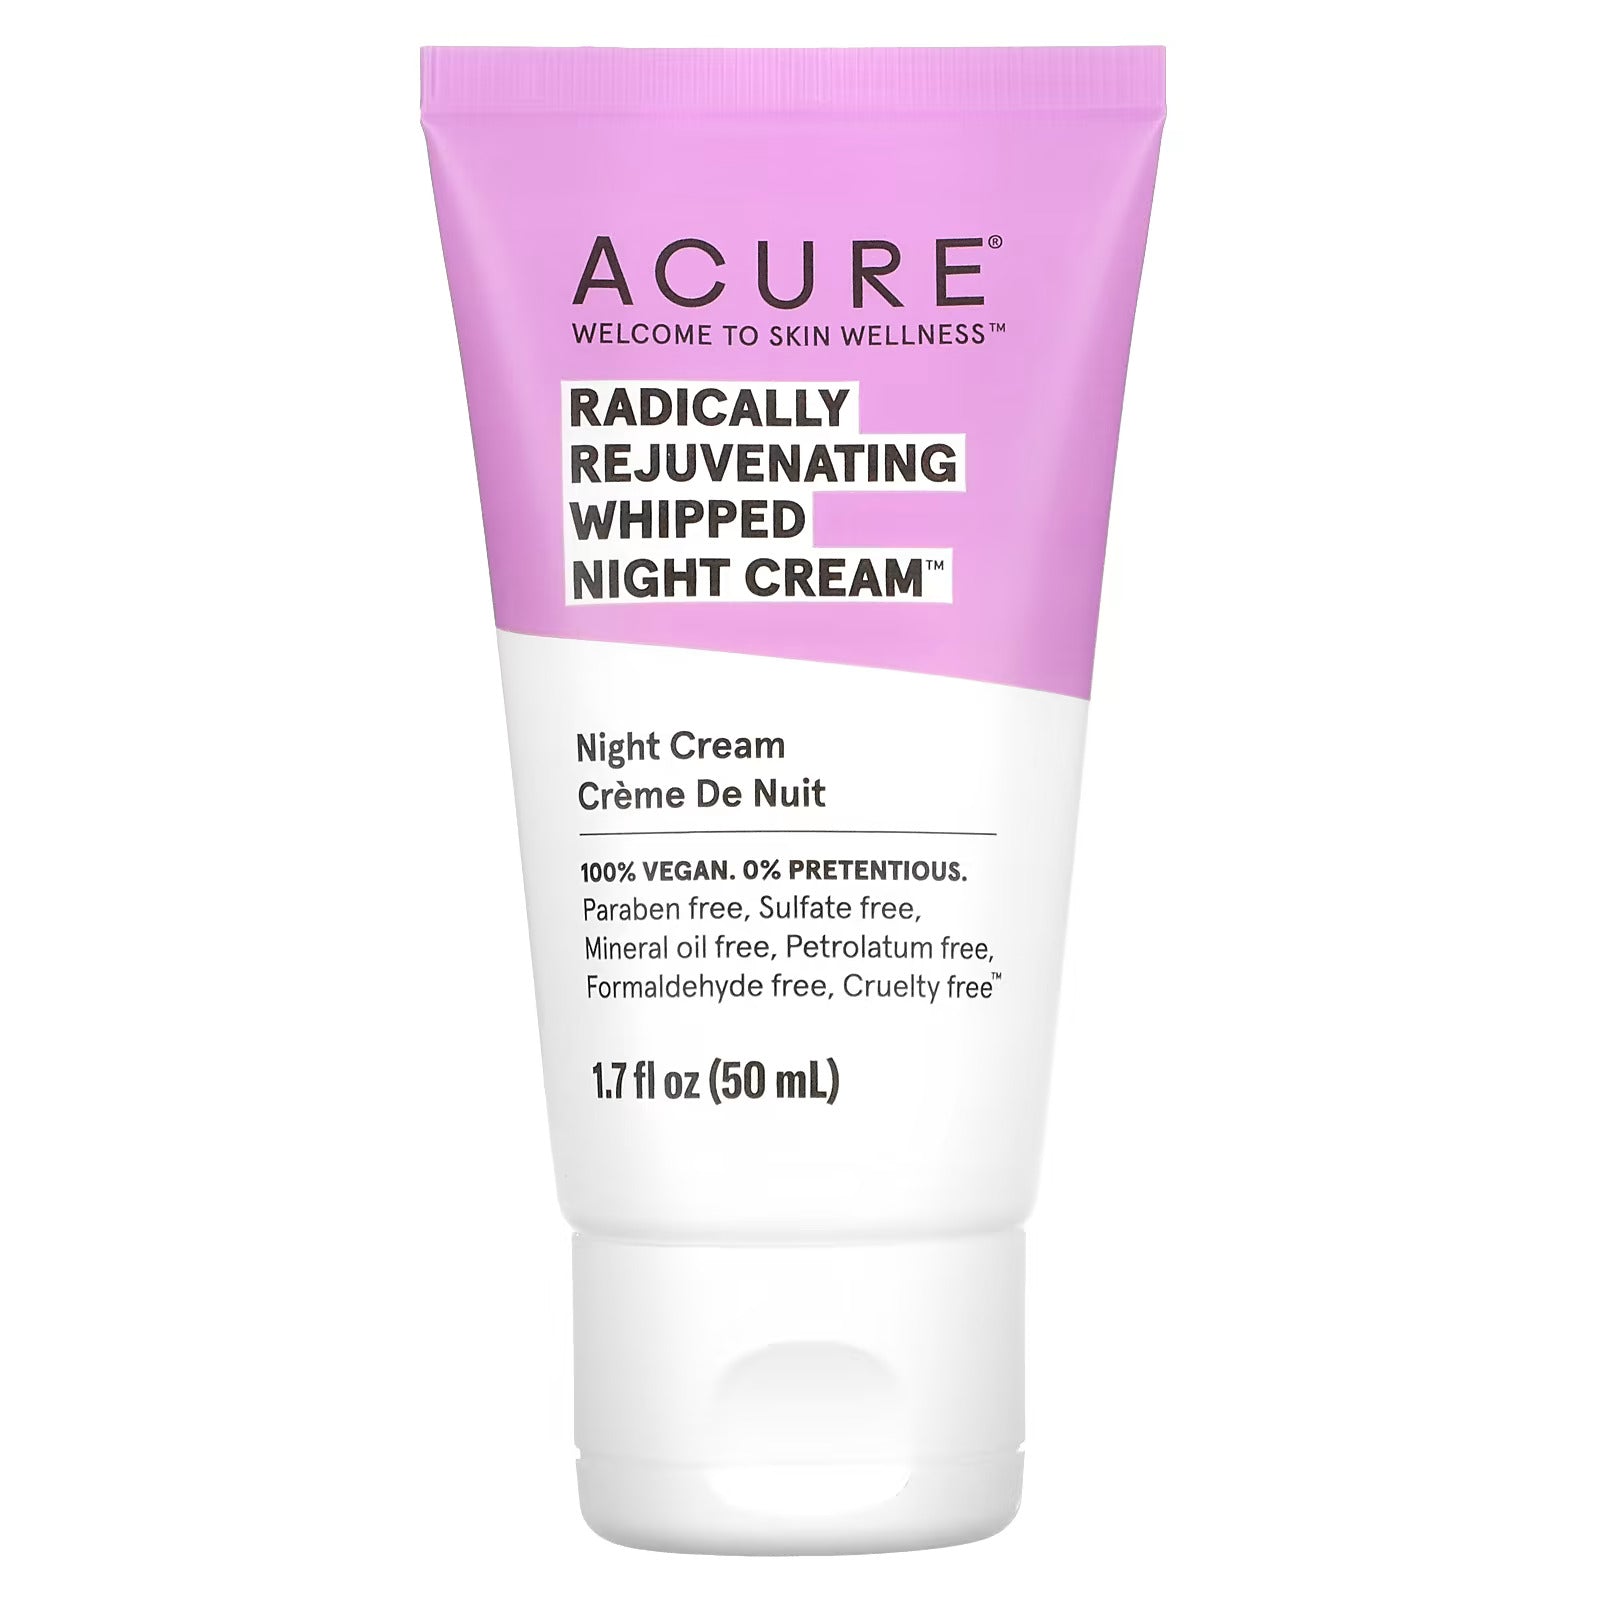 Acure - Whipped Night Cream - Radically Rejuvenating - 1.7 Fl Oz.